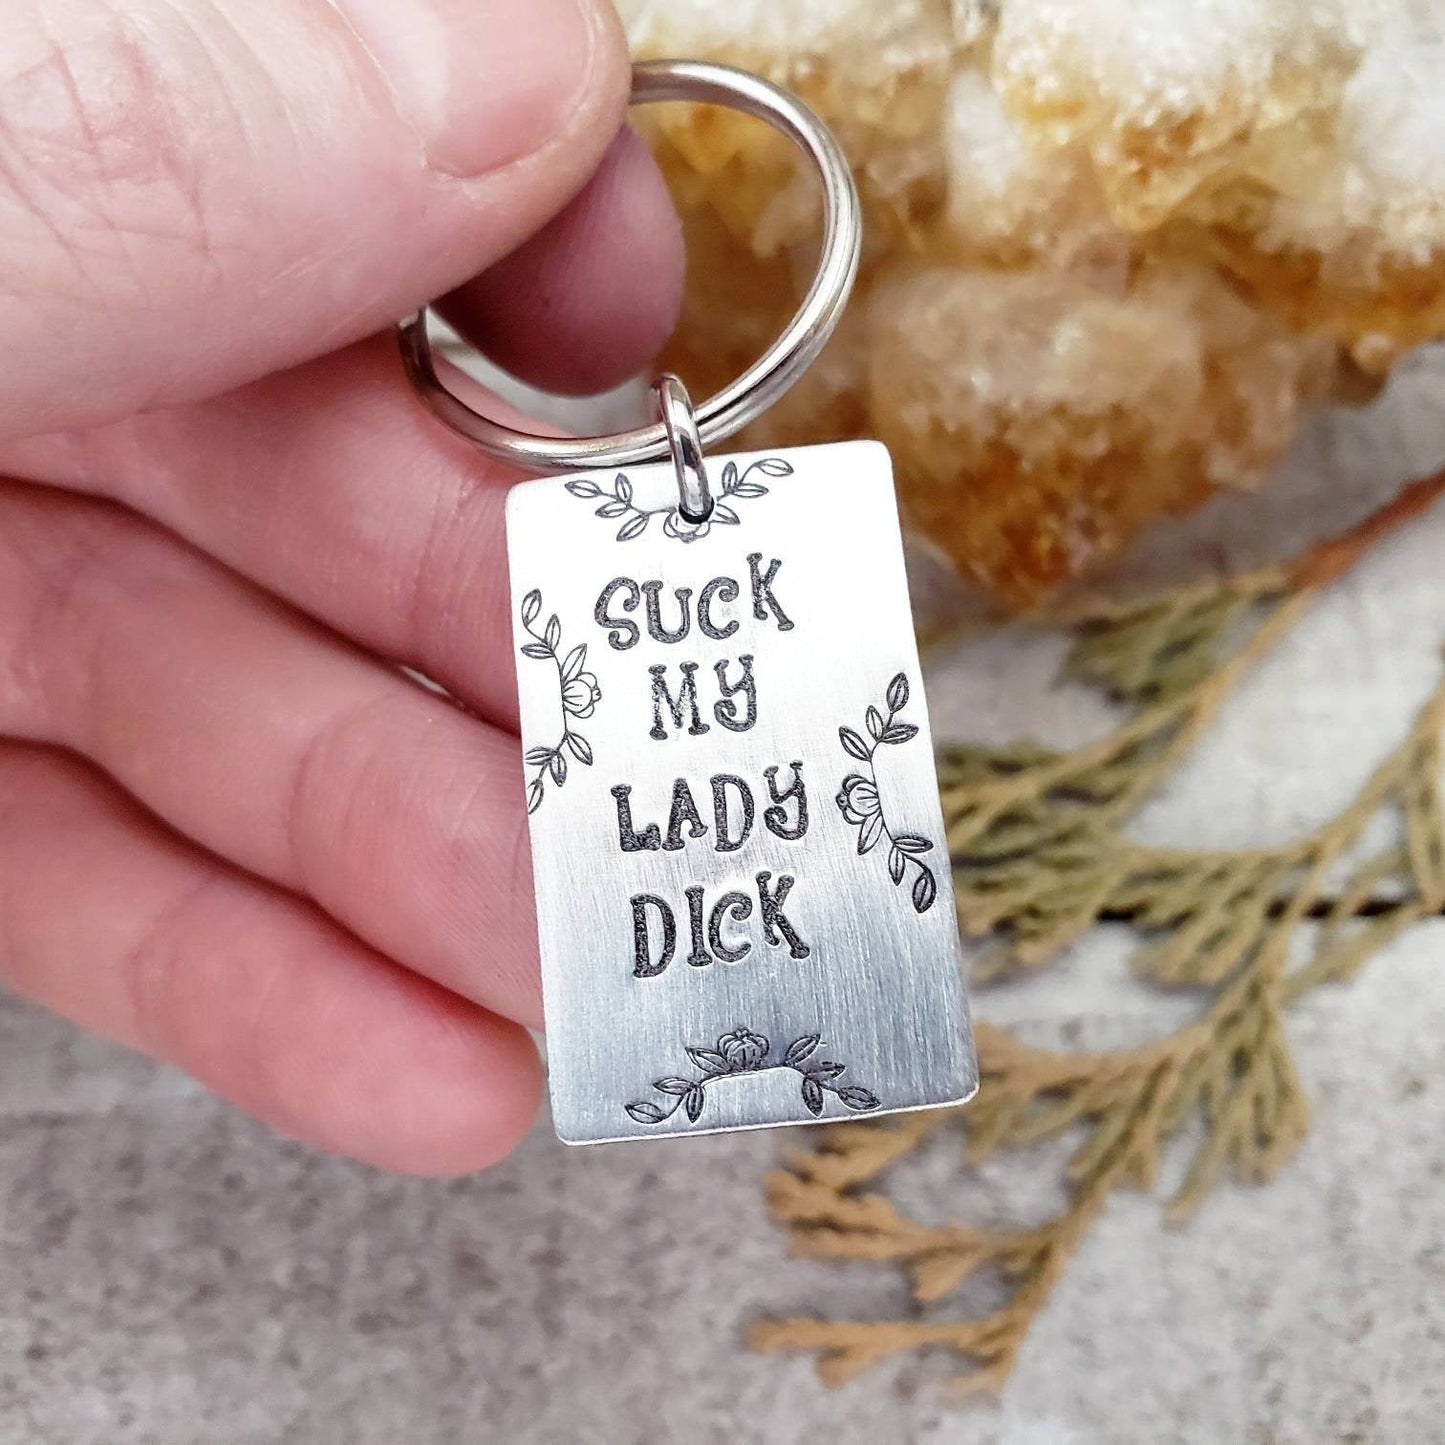 Suck my lady dick keychain